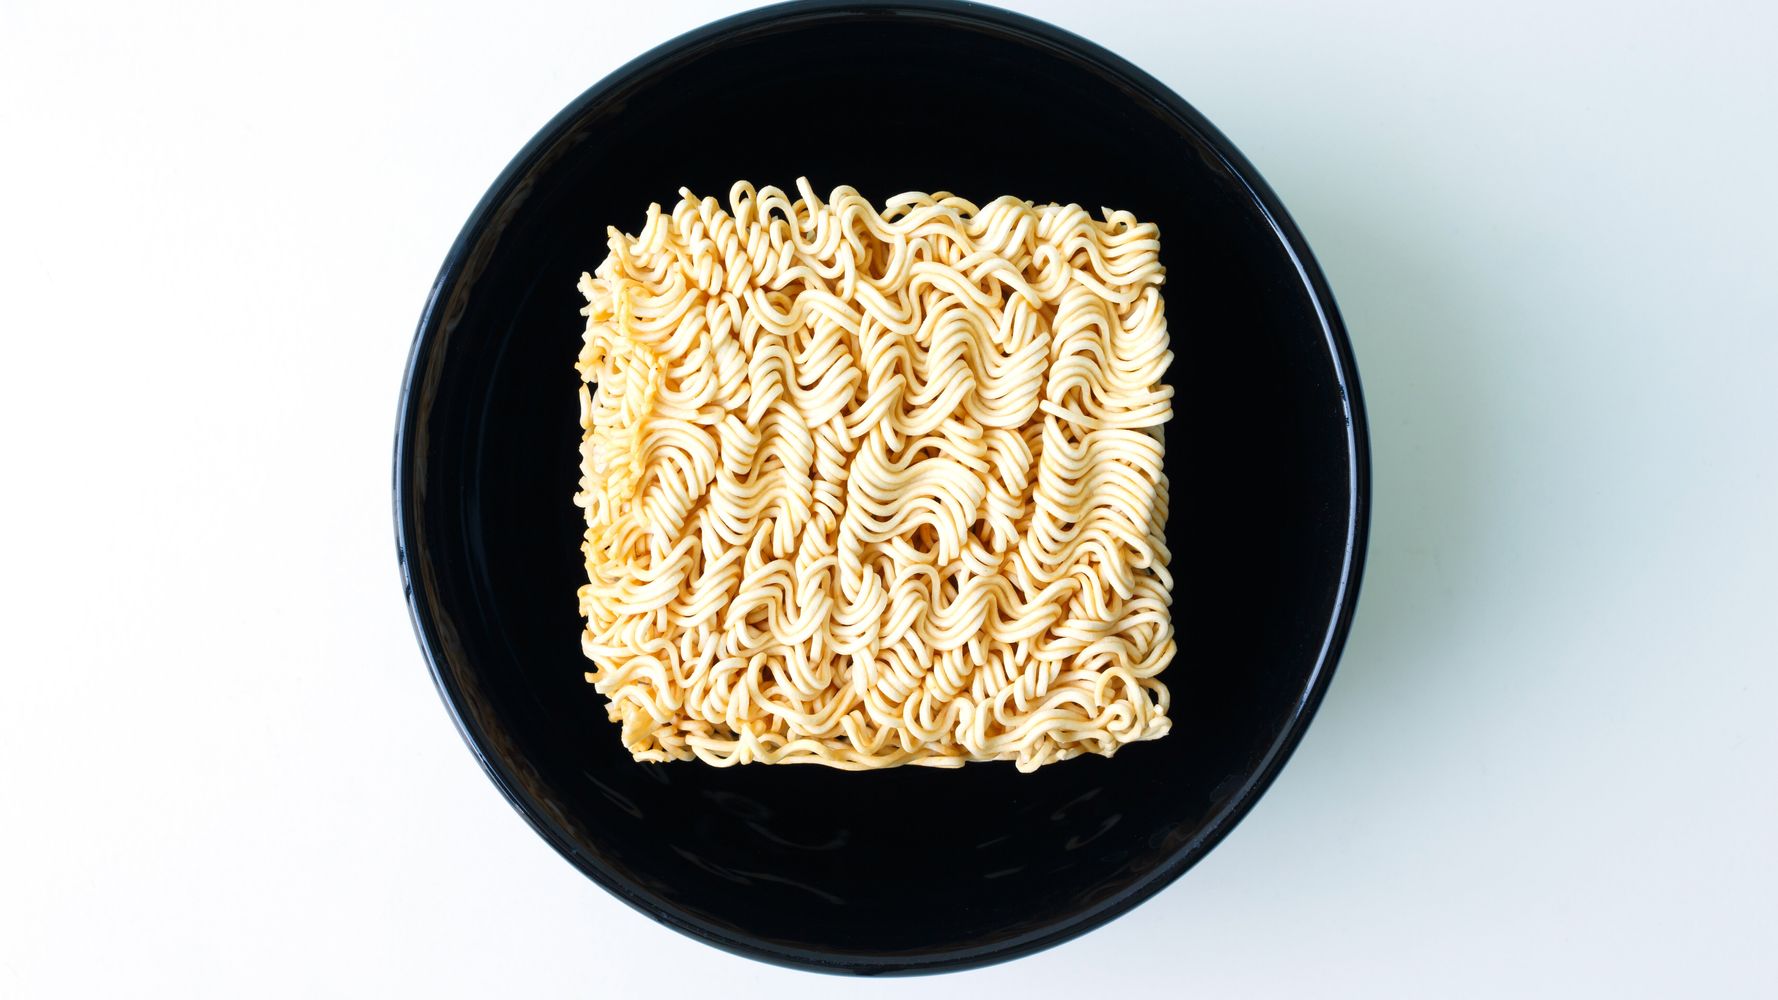 Ramen Noodles : Pasta, Rice & Grains : Target